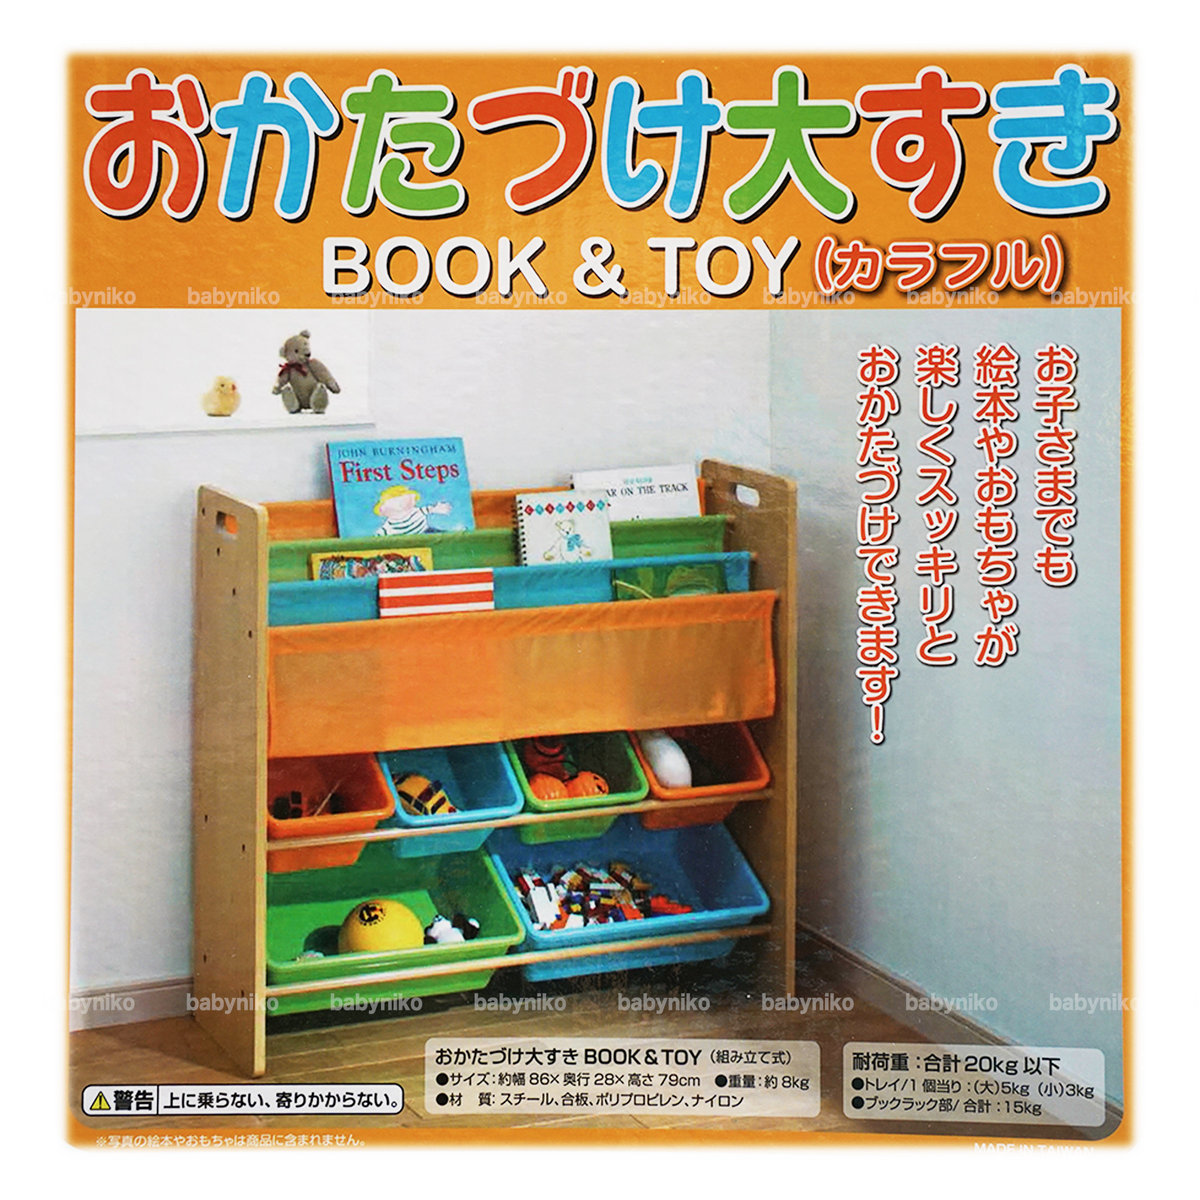 online shopping children's toys